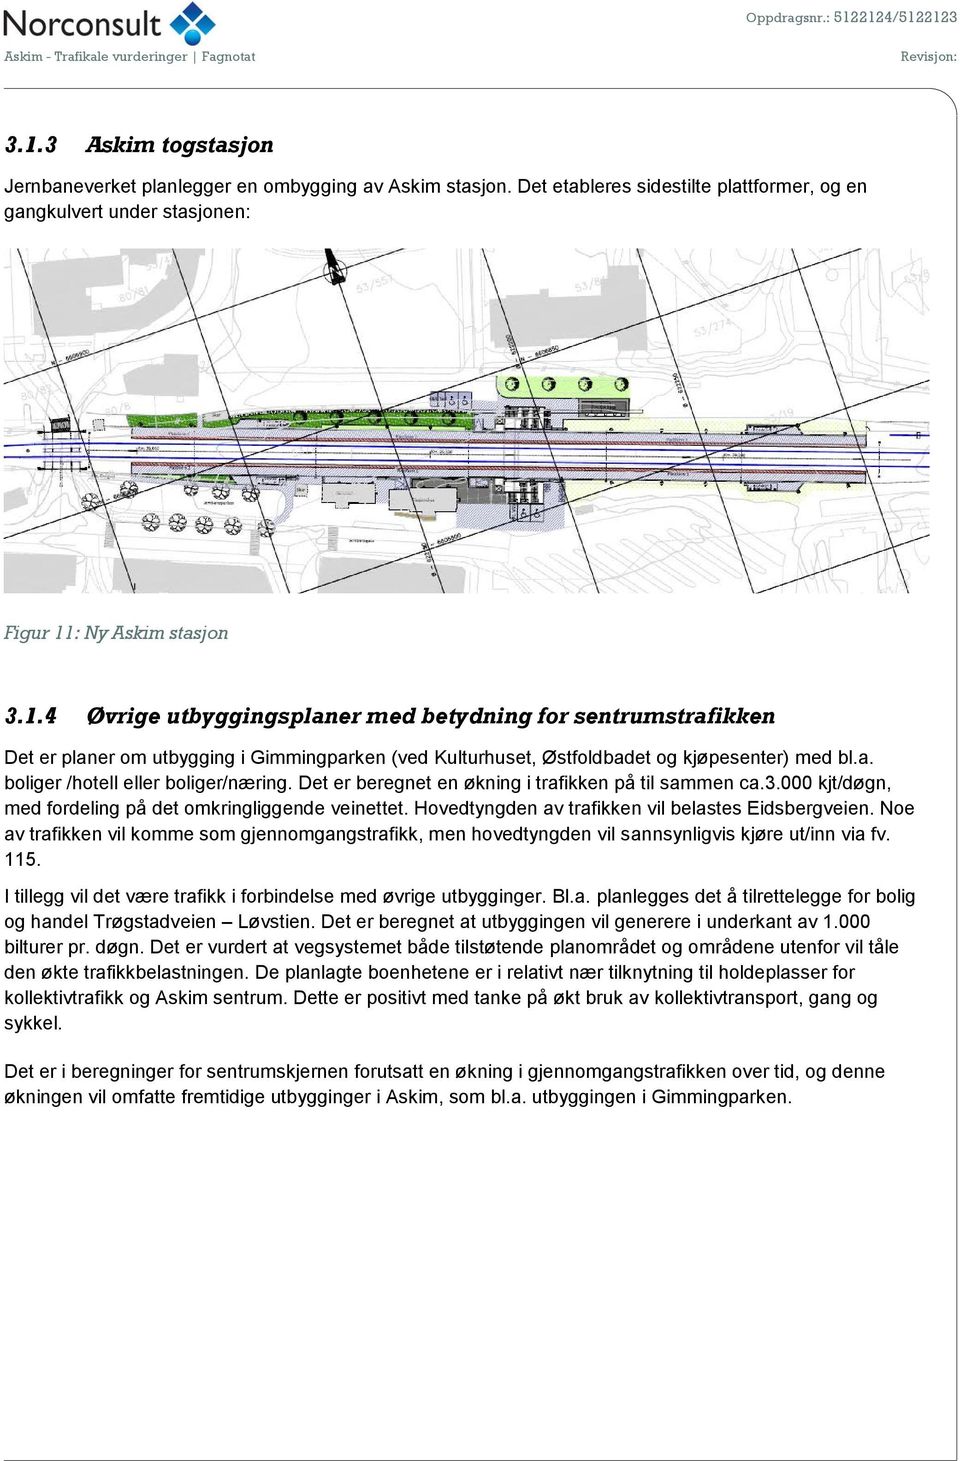 Hovedtyngden av trafikken vil belastes Eidsbergveien. Noe av trafikken vil komme som gjennomgangstrafikk, men hovedtyngden vil sannsynligvis kjøre ut/inn via fv. 115.